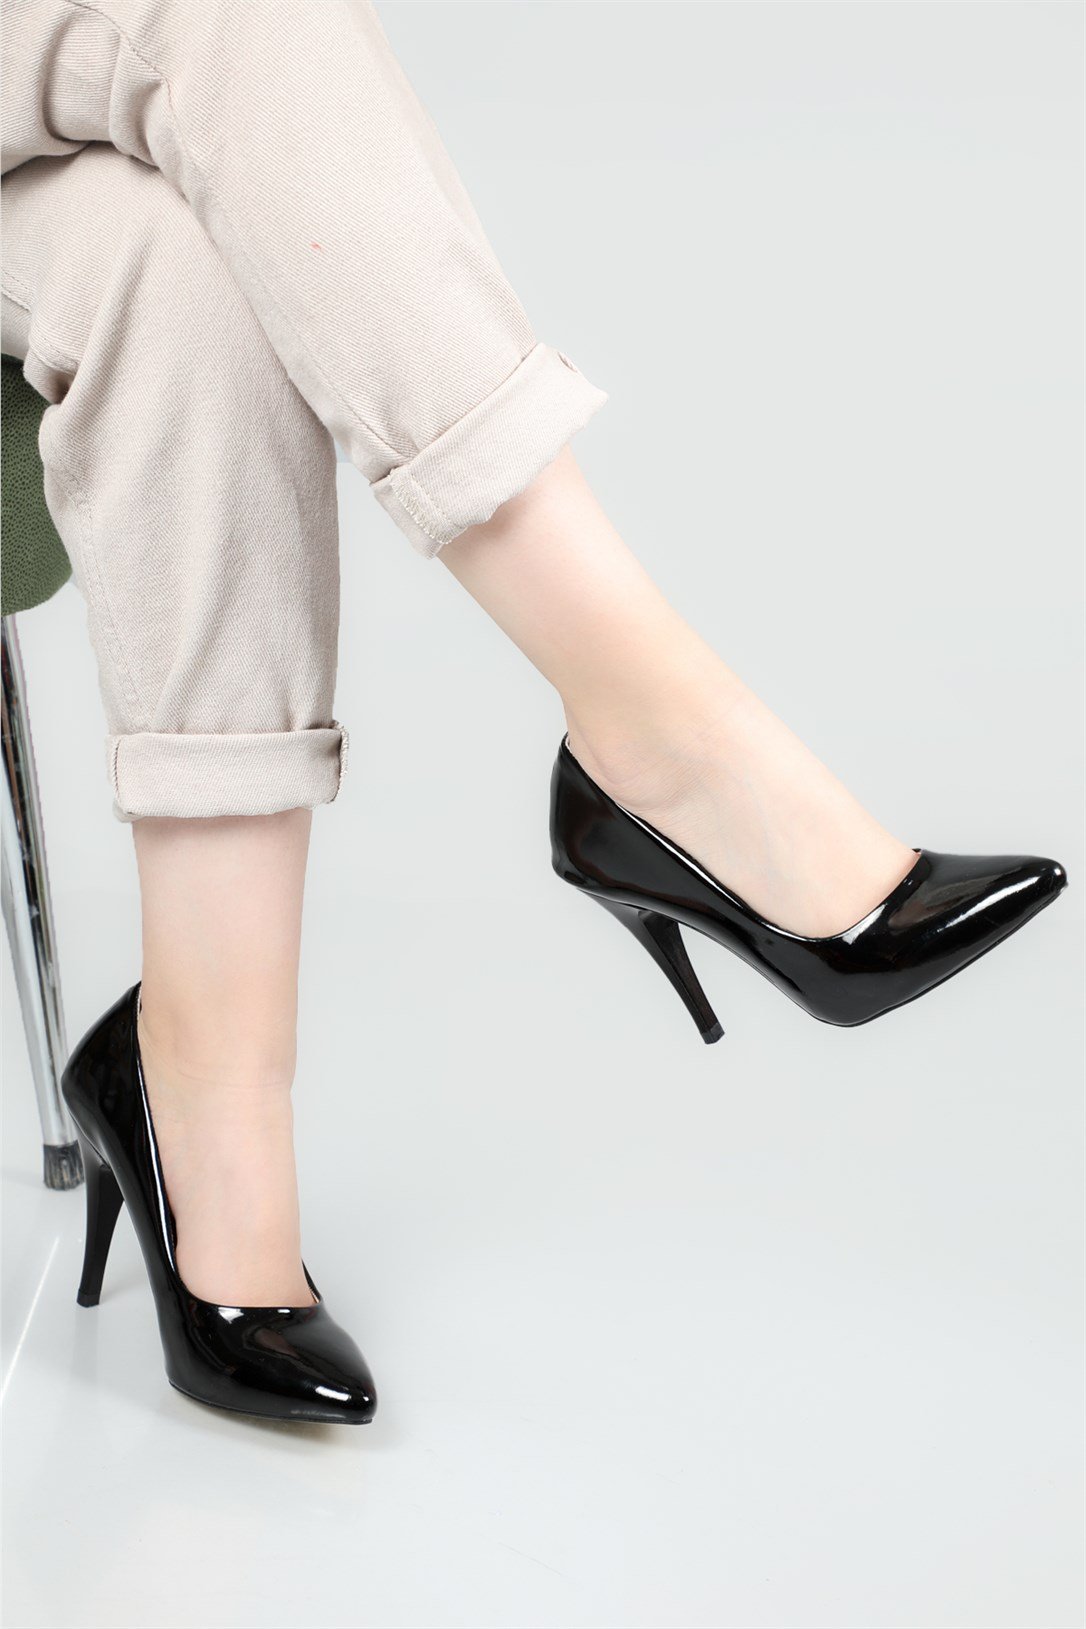 Carla Bella Stiletto Yüksek Topuklu Siyah Rugan Kadın Ayakkabı Sitare 09